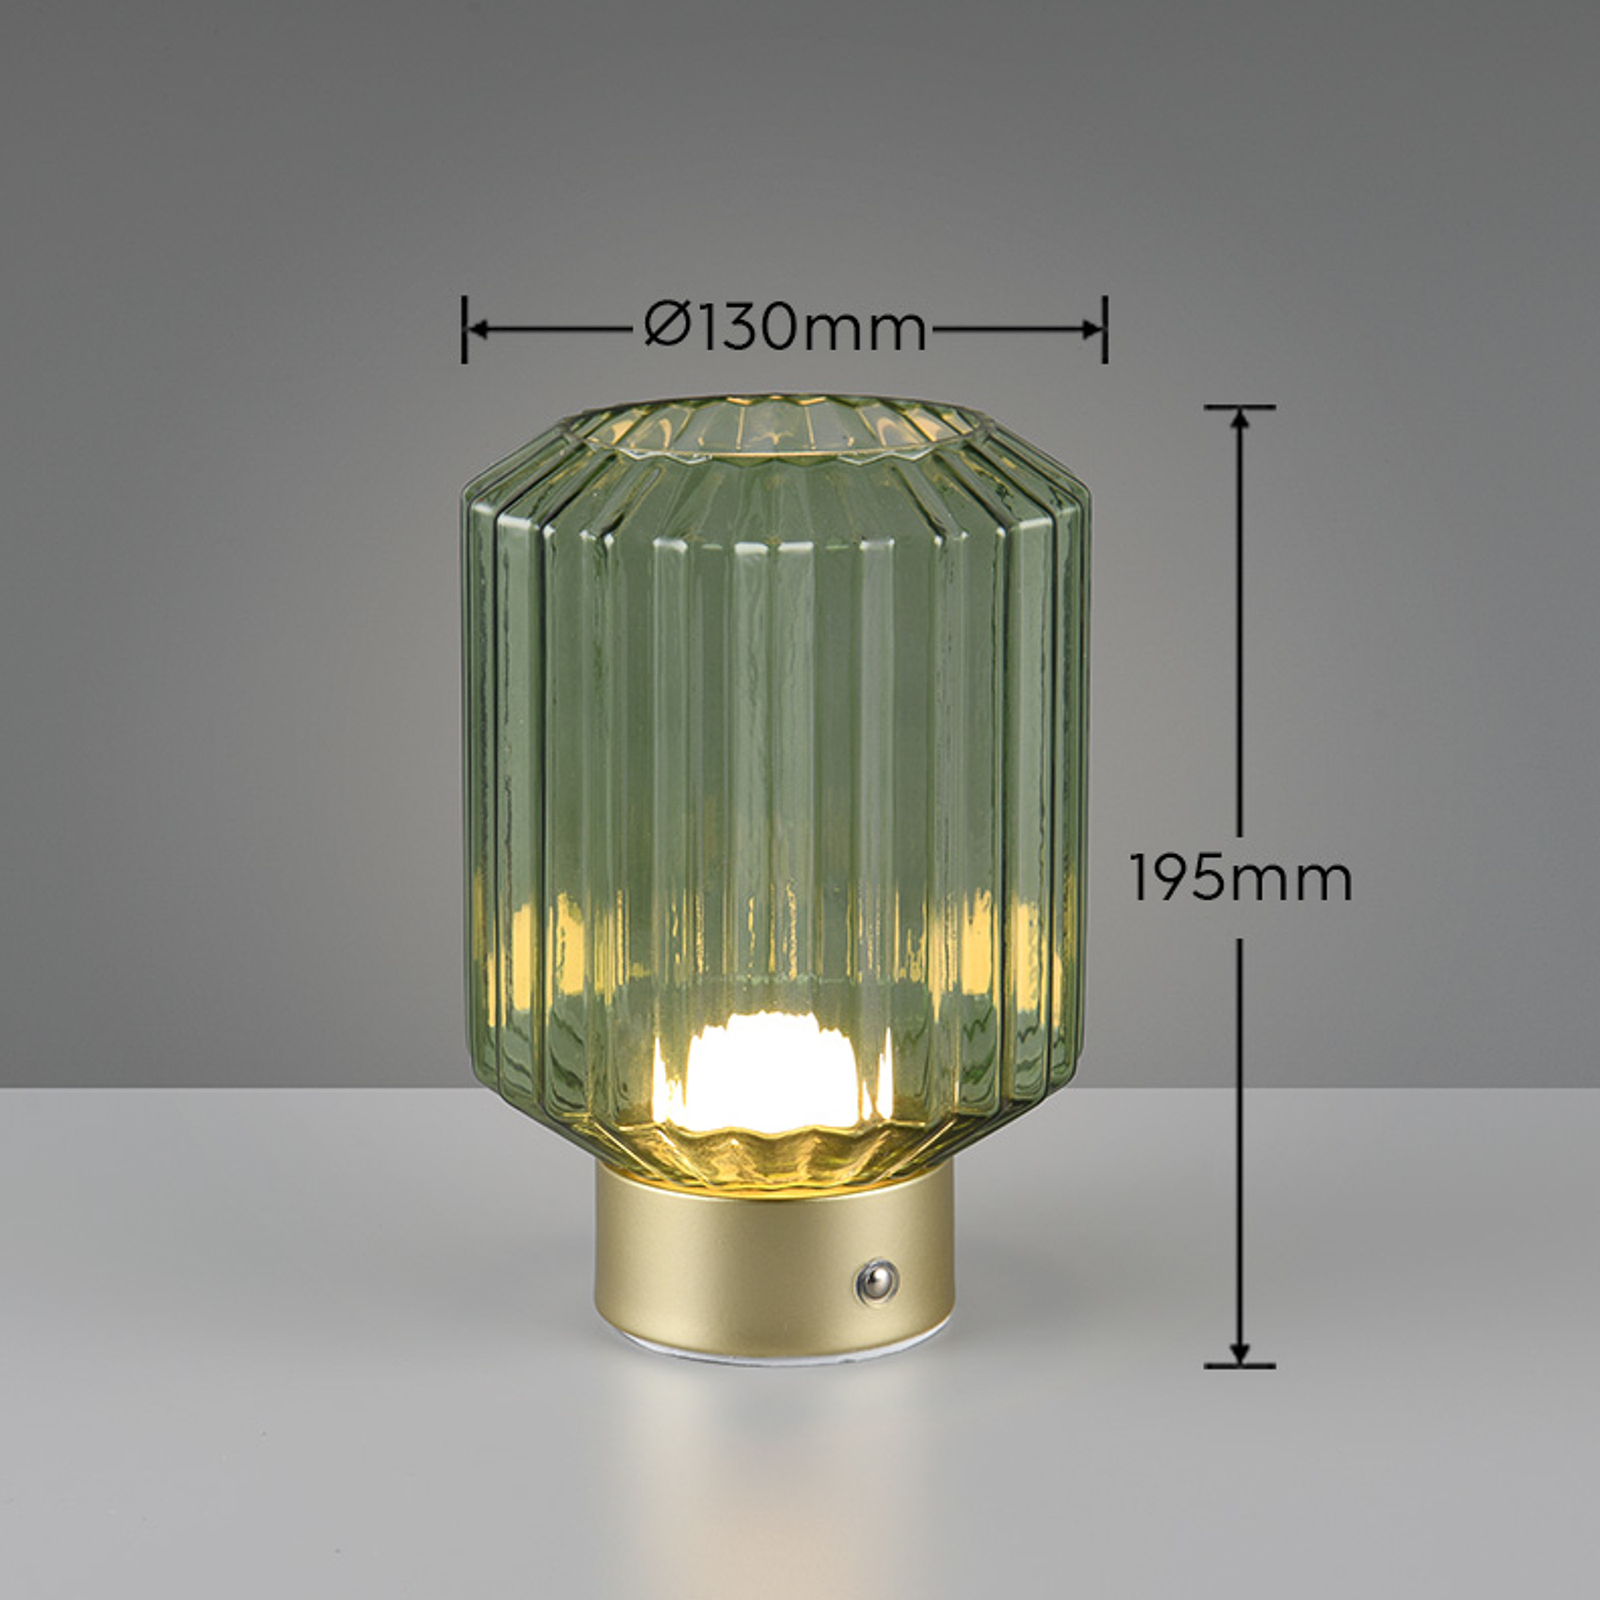 Lord LED namizna svetilka za polnjenje, medeninasta/zelena, višina 19,5